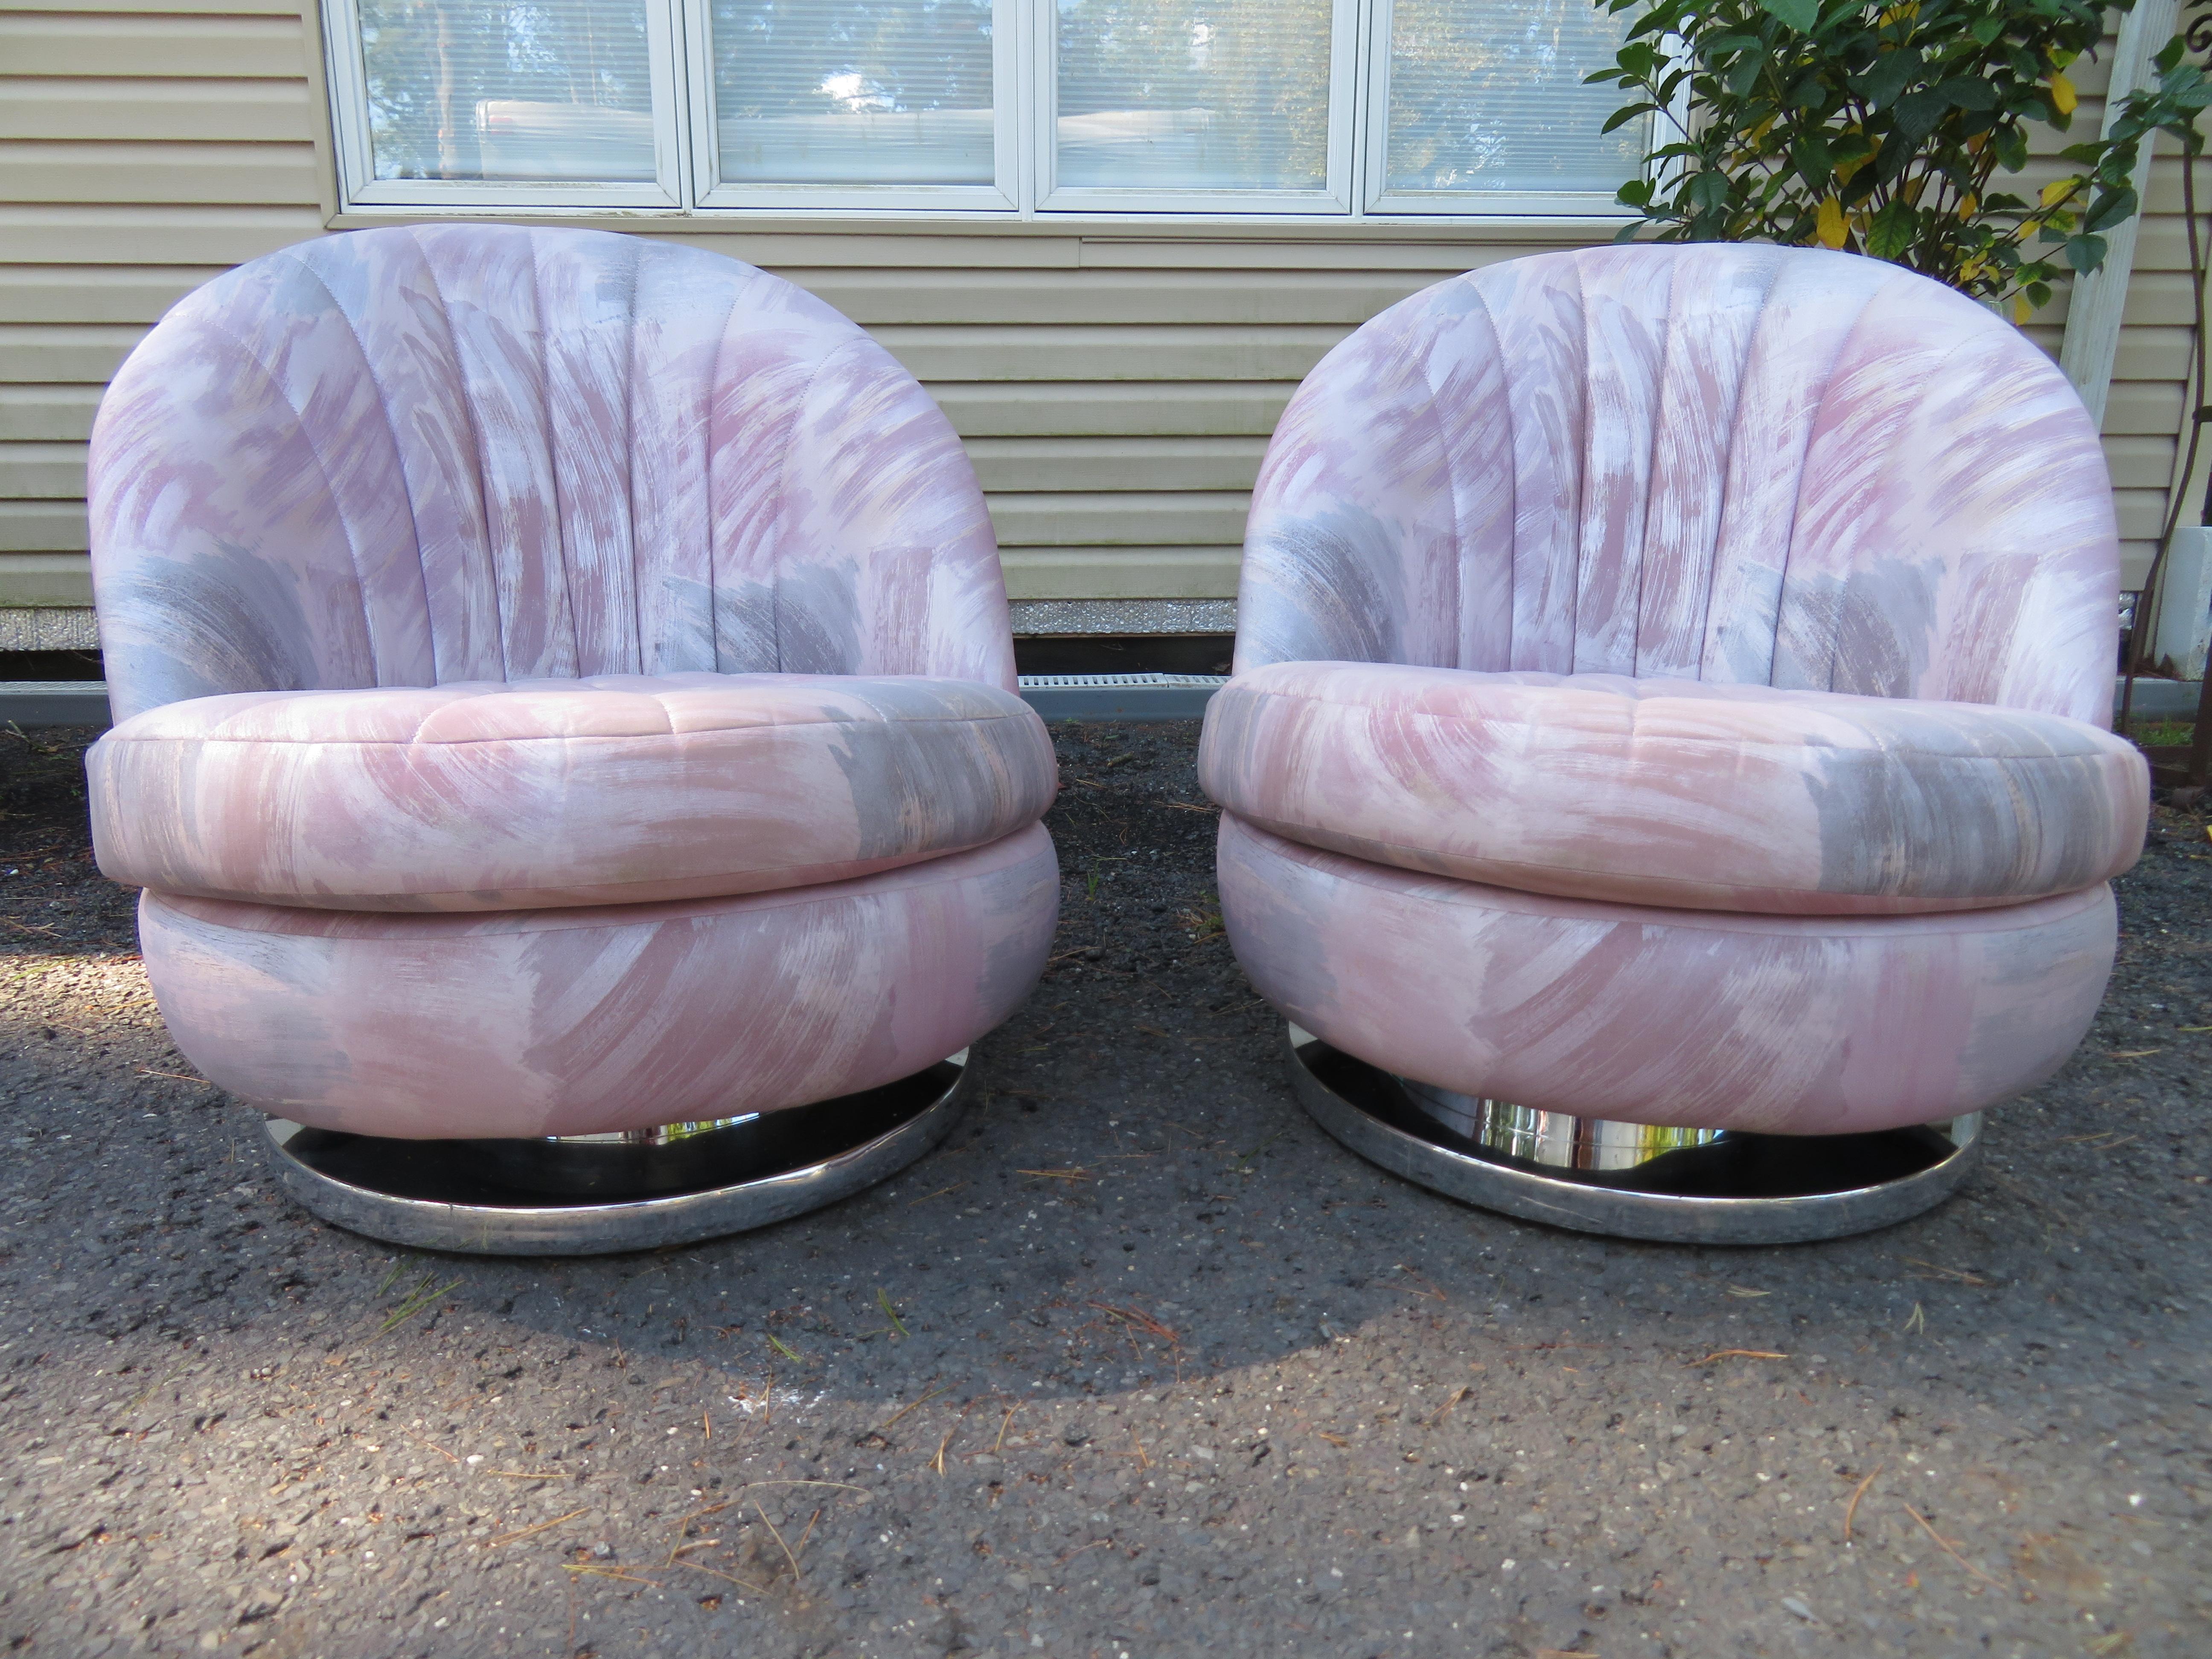 Wunderschönes Paar Schaukelstühle mit abgerundeter Rückenlehne, entworfen von Milo Baughman, hergestellt von Thayer Coggin. Der Sitz ist sehr bequem und macht durch die Drehwippfunktion Spaß. Beide Stühle sind in einem sehr guten Zustand mit wenigen